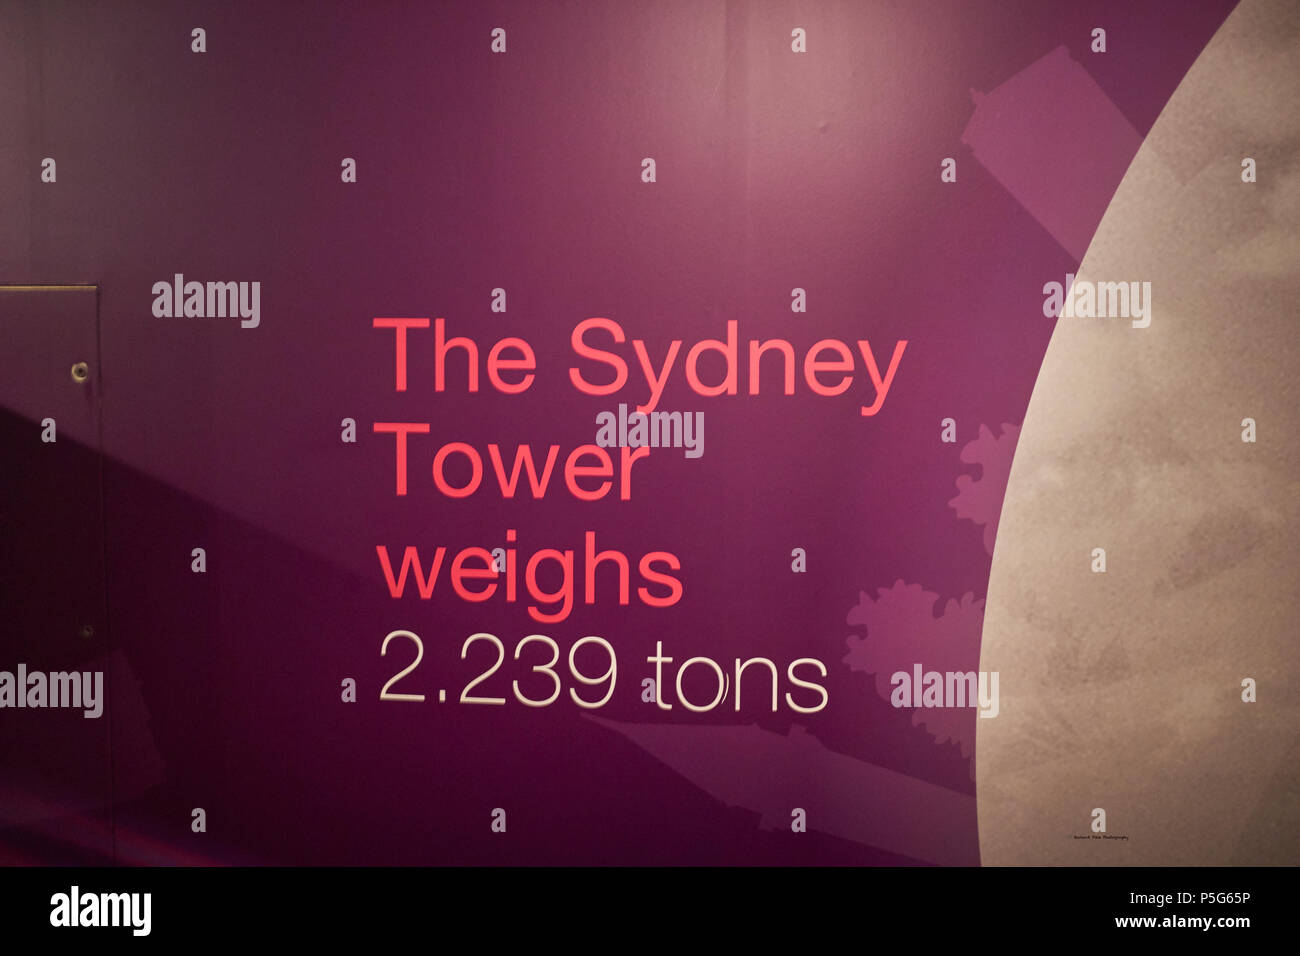 Information écrite sur un mur à l'intérieur de la Tour de Sydney montrant que la tour pèse 2,239 tonnes Banque D'Images